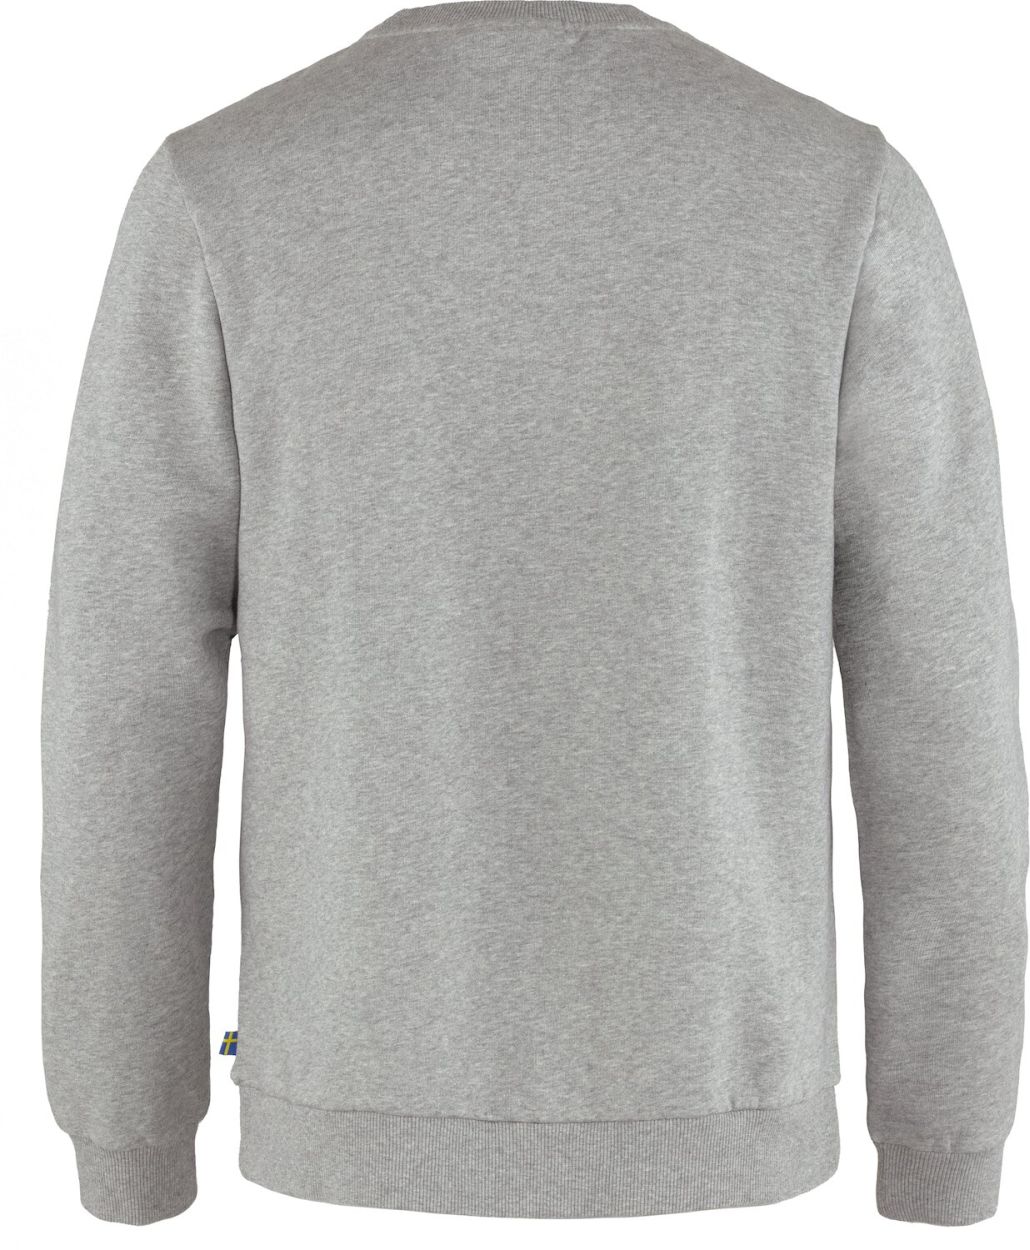 M's Fjällräven Logo Sweater, grey-melange